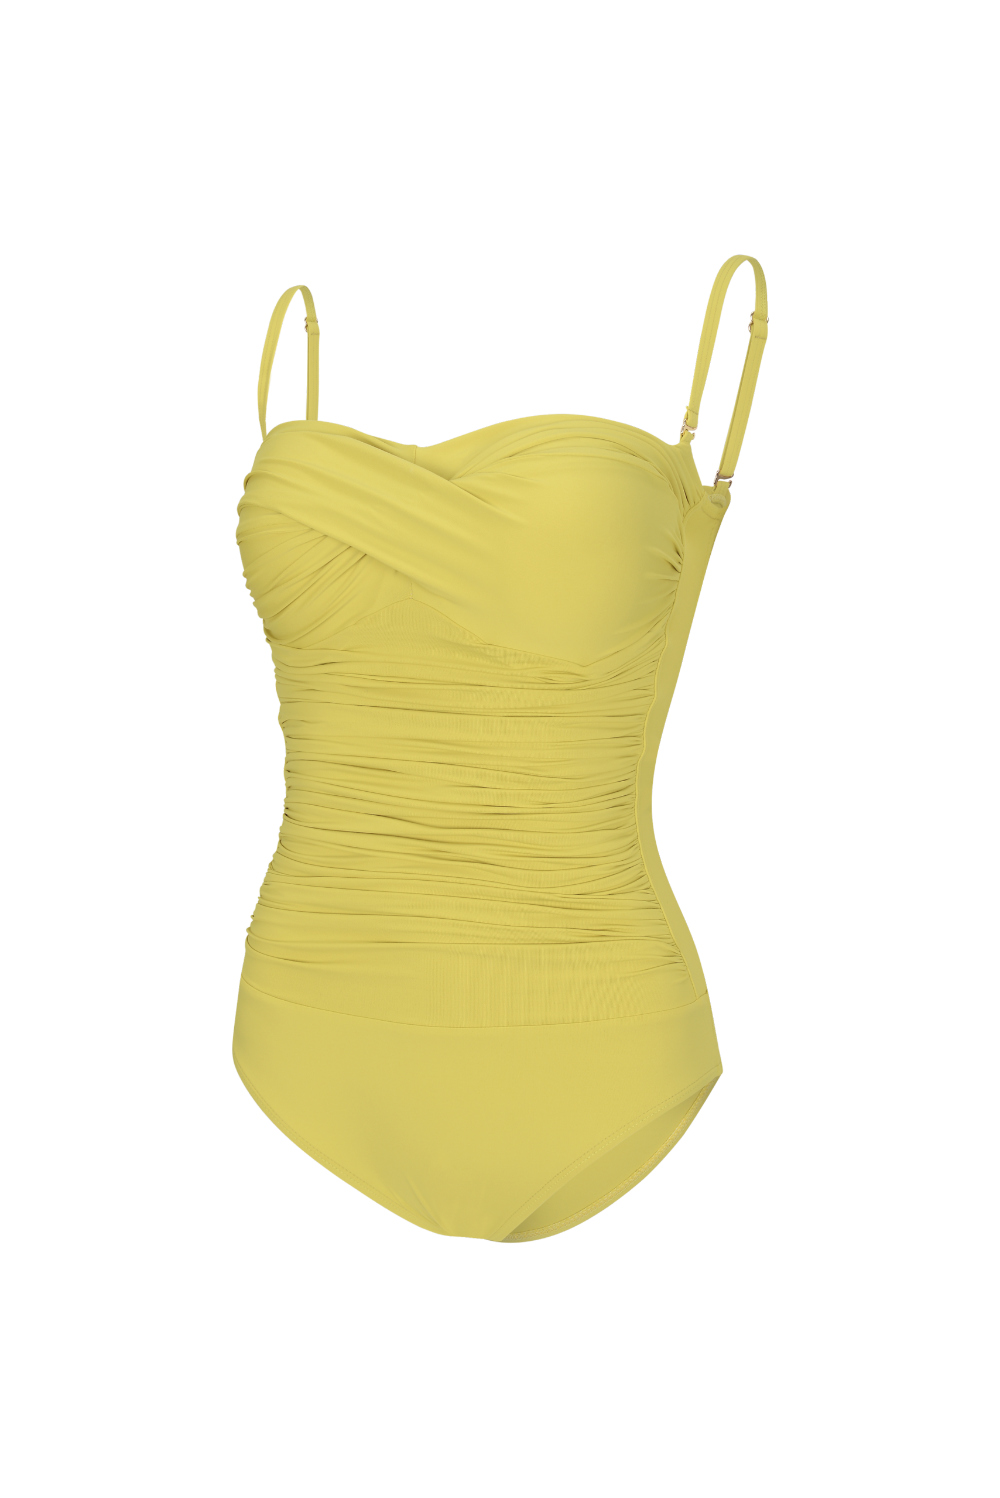 游泳衣/内部磨损 yellow 彩色图像-S2L4